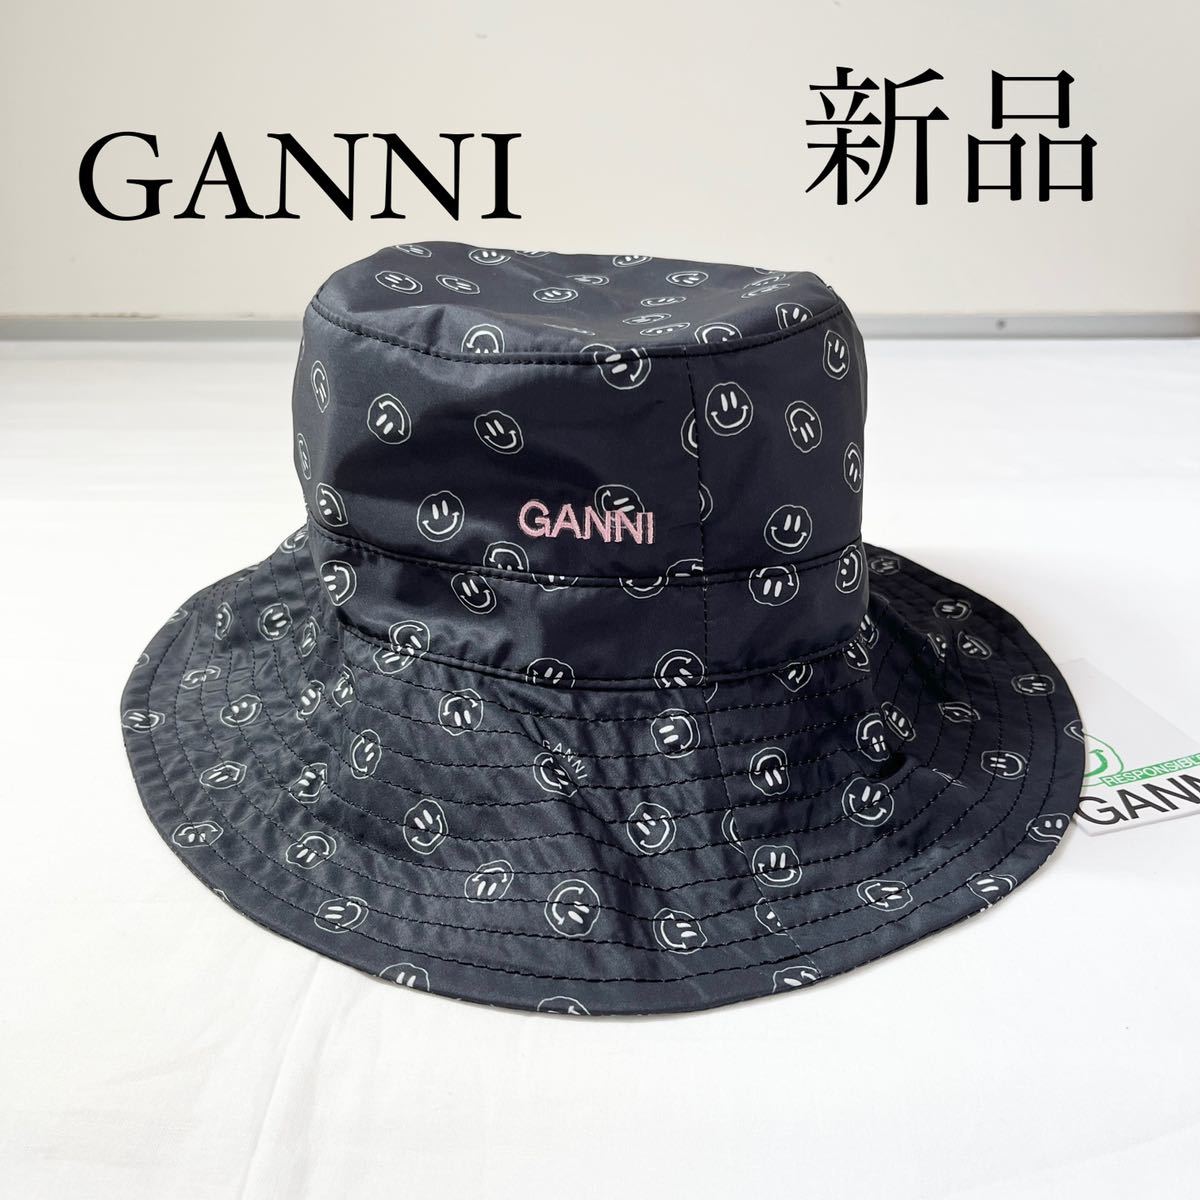 GANNI ガニー ロゴ入り デザインバケットハット バケハ kajuen.net